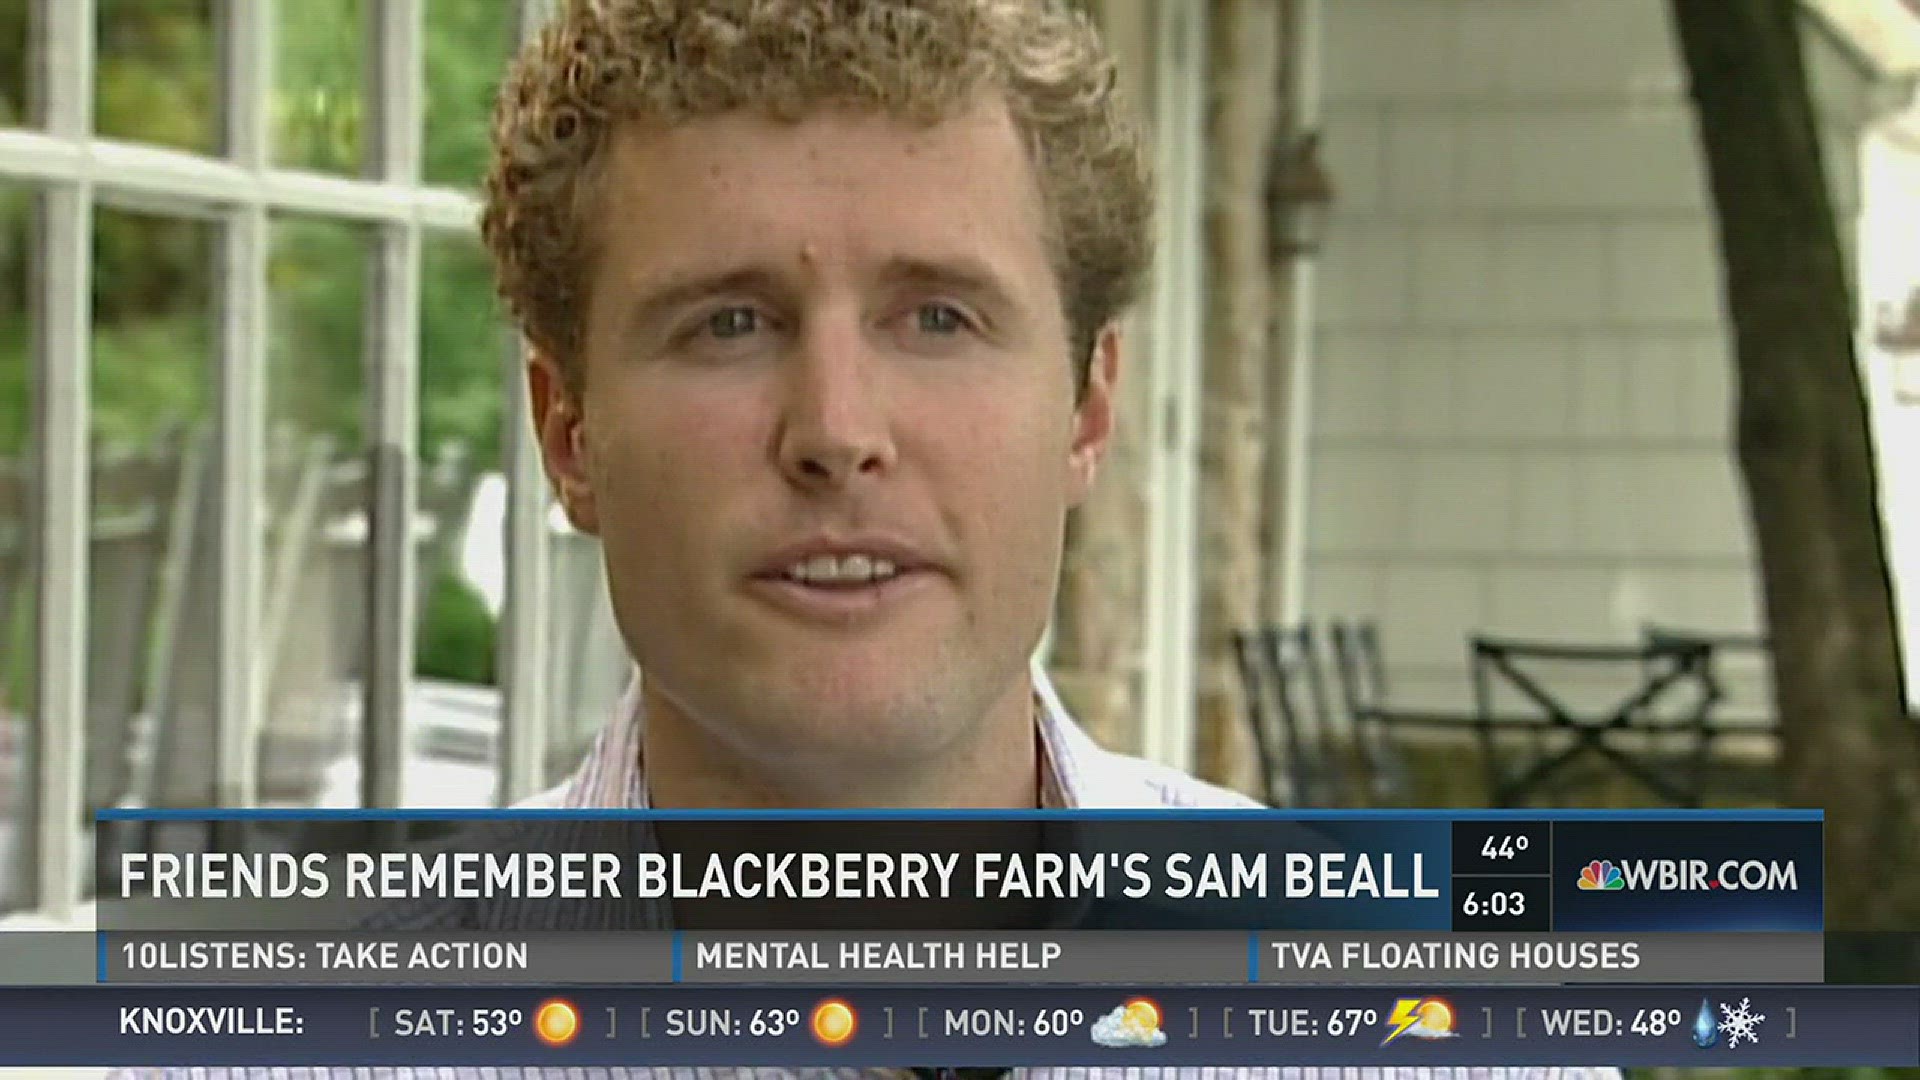 Friends Remember Blackberry Farm's Sam Beall